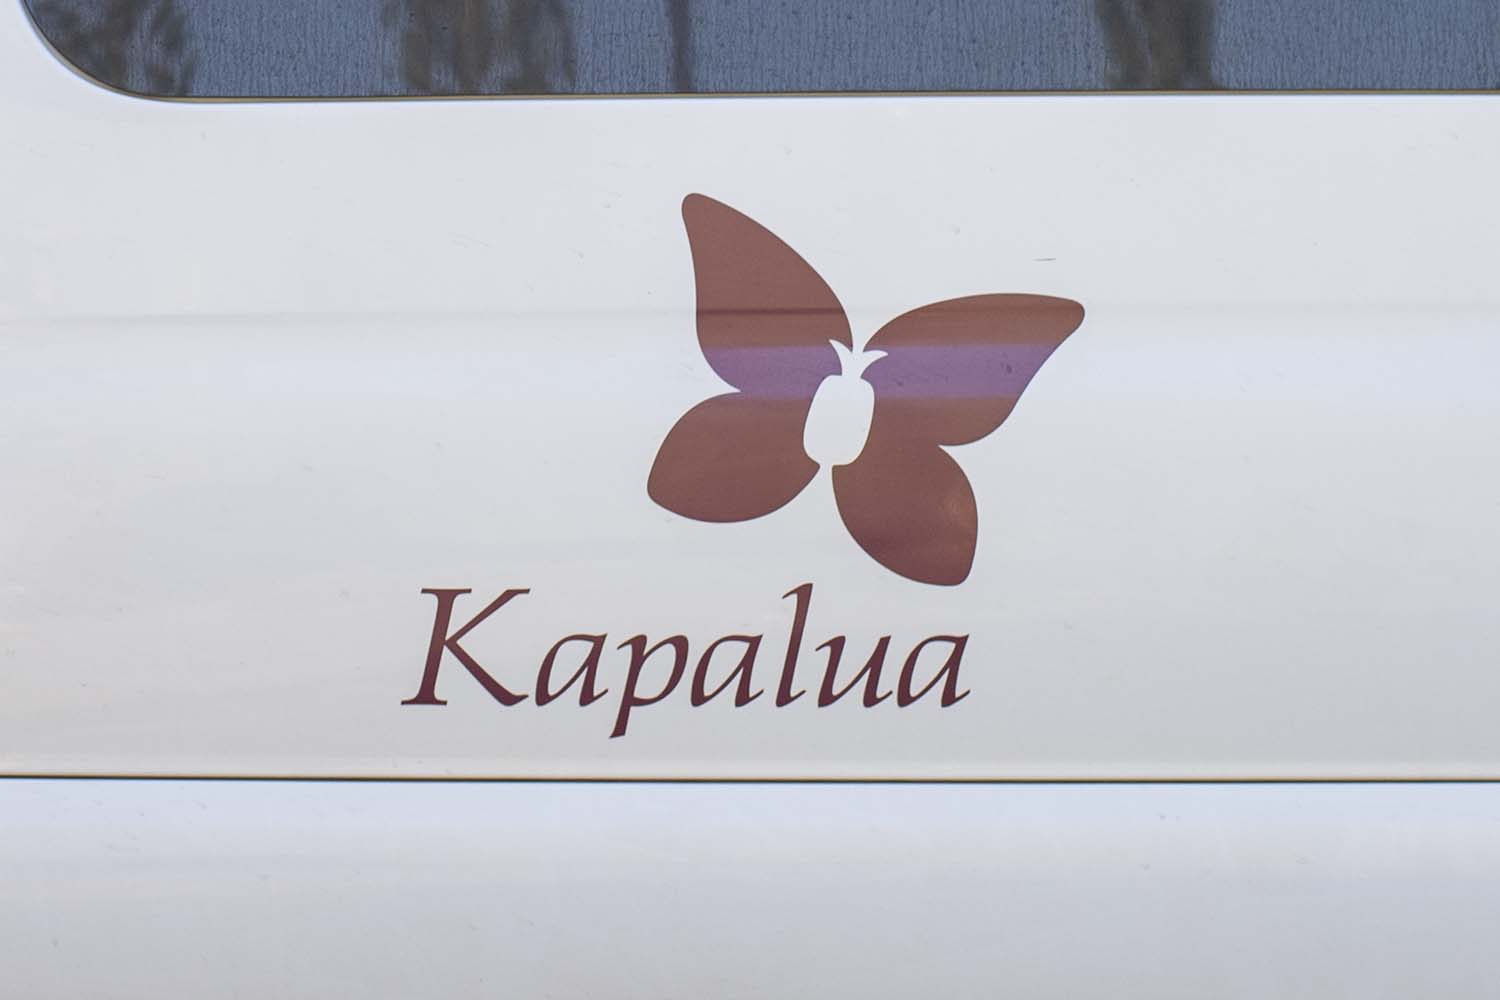 Kapalua Butterfly on the Kapalua Shuttle